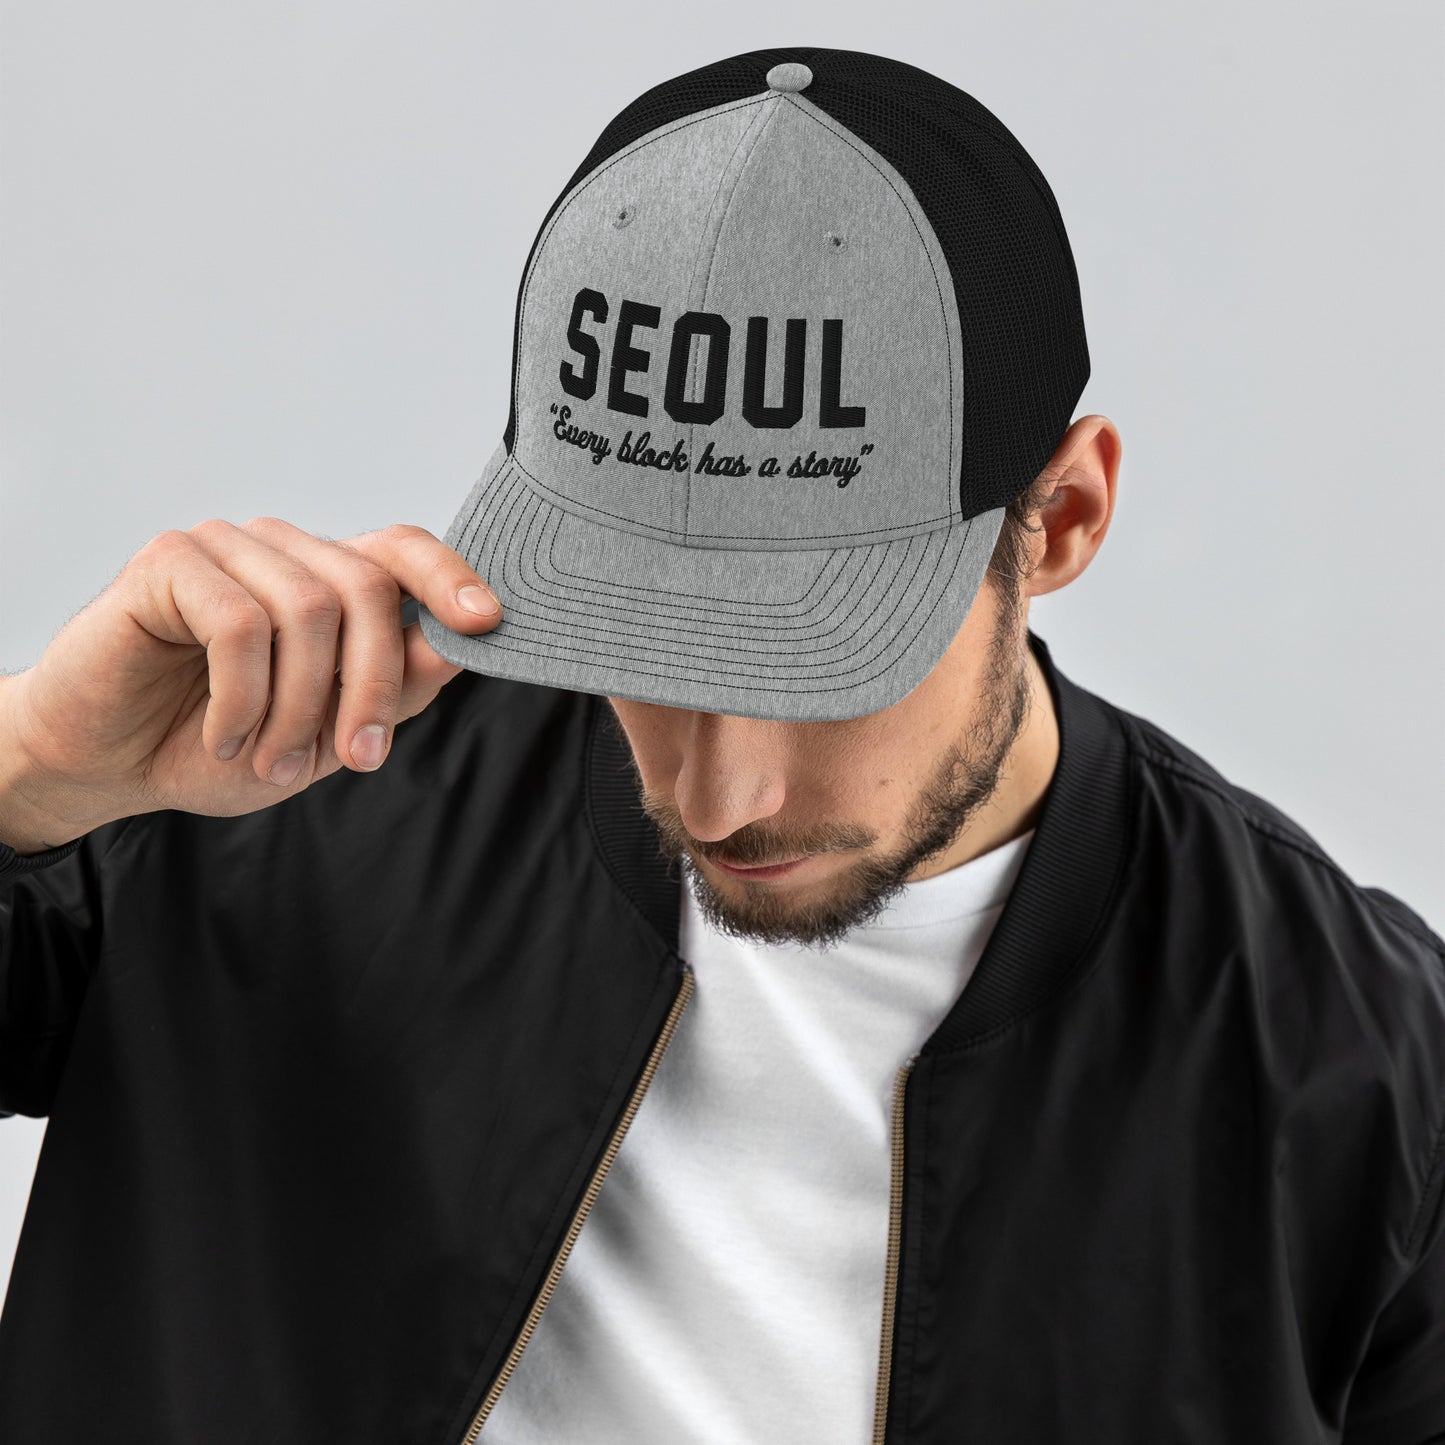 Seoul Story Hat